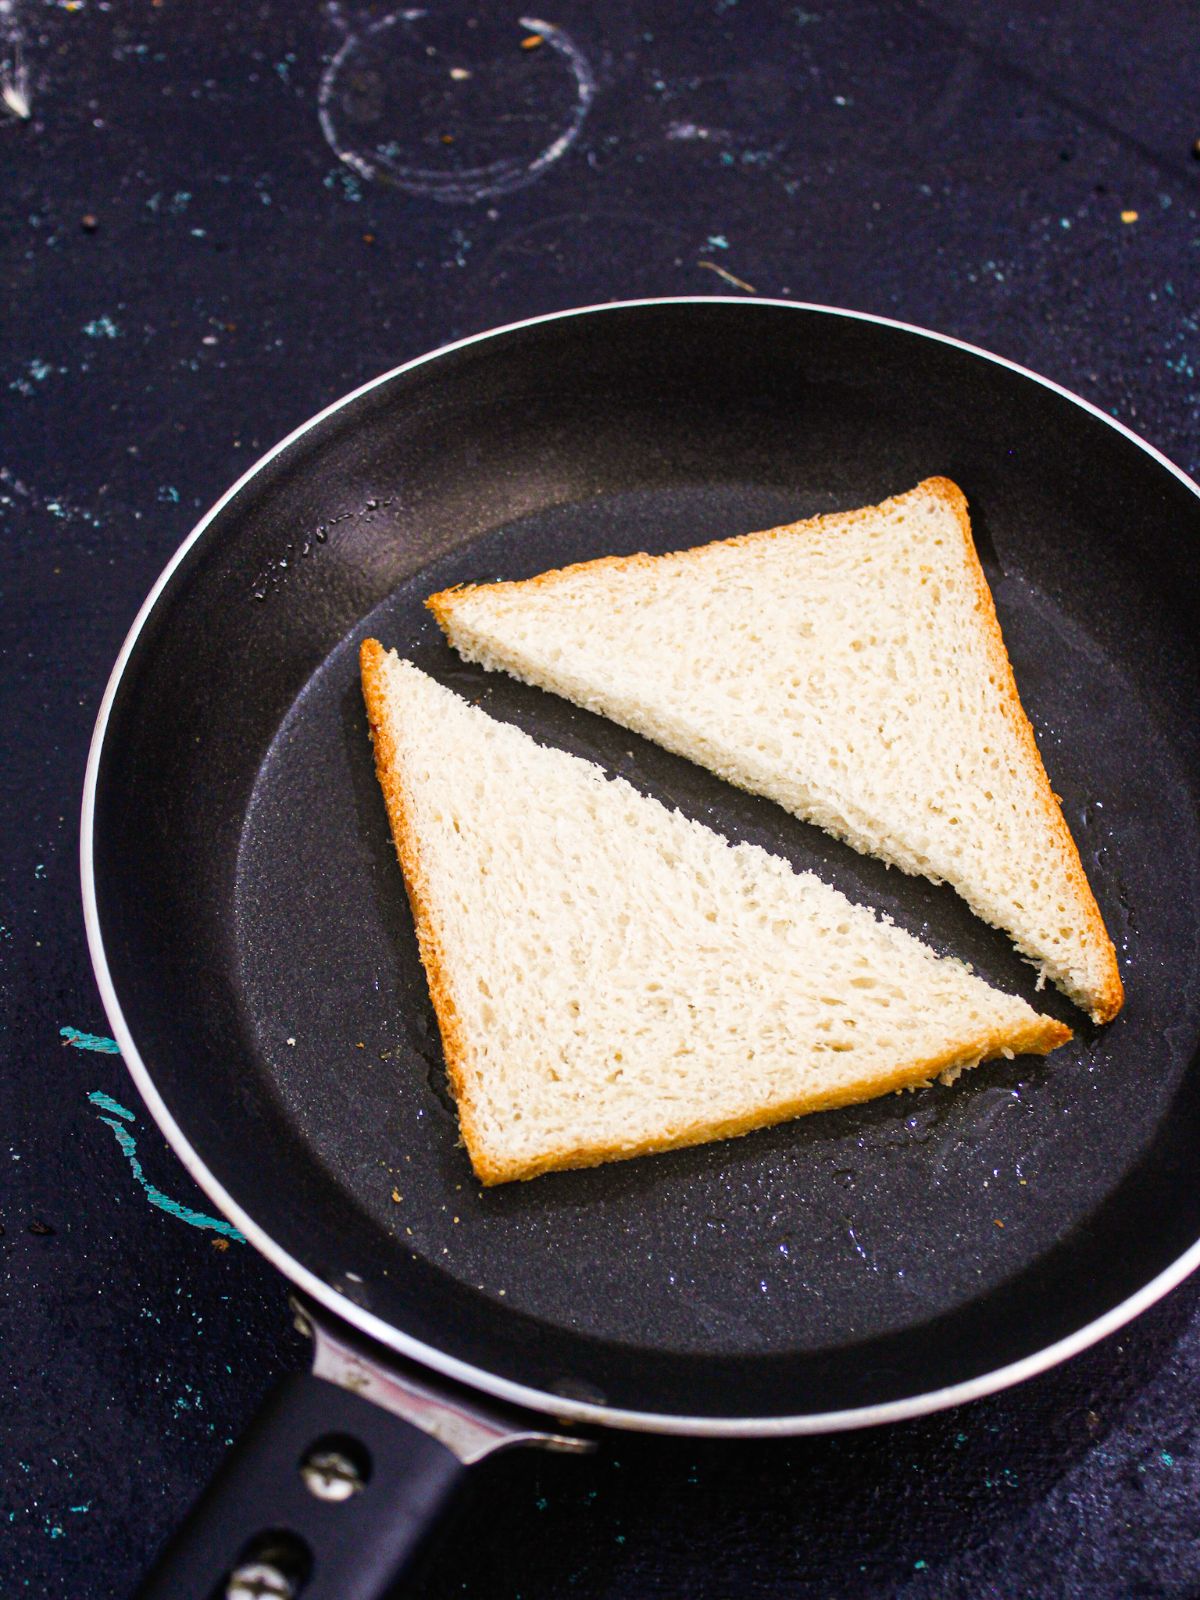 Cut the bread slices into triangle